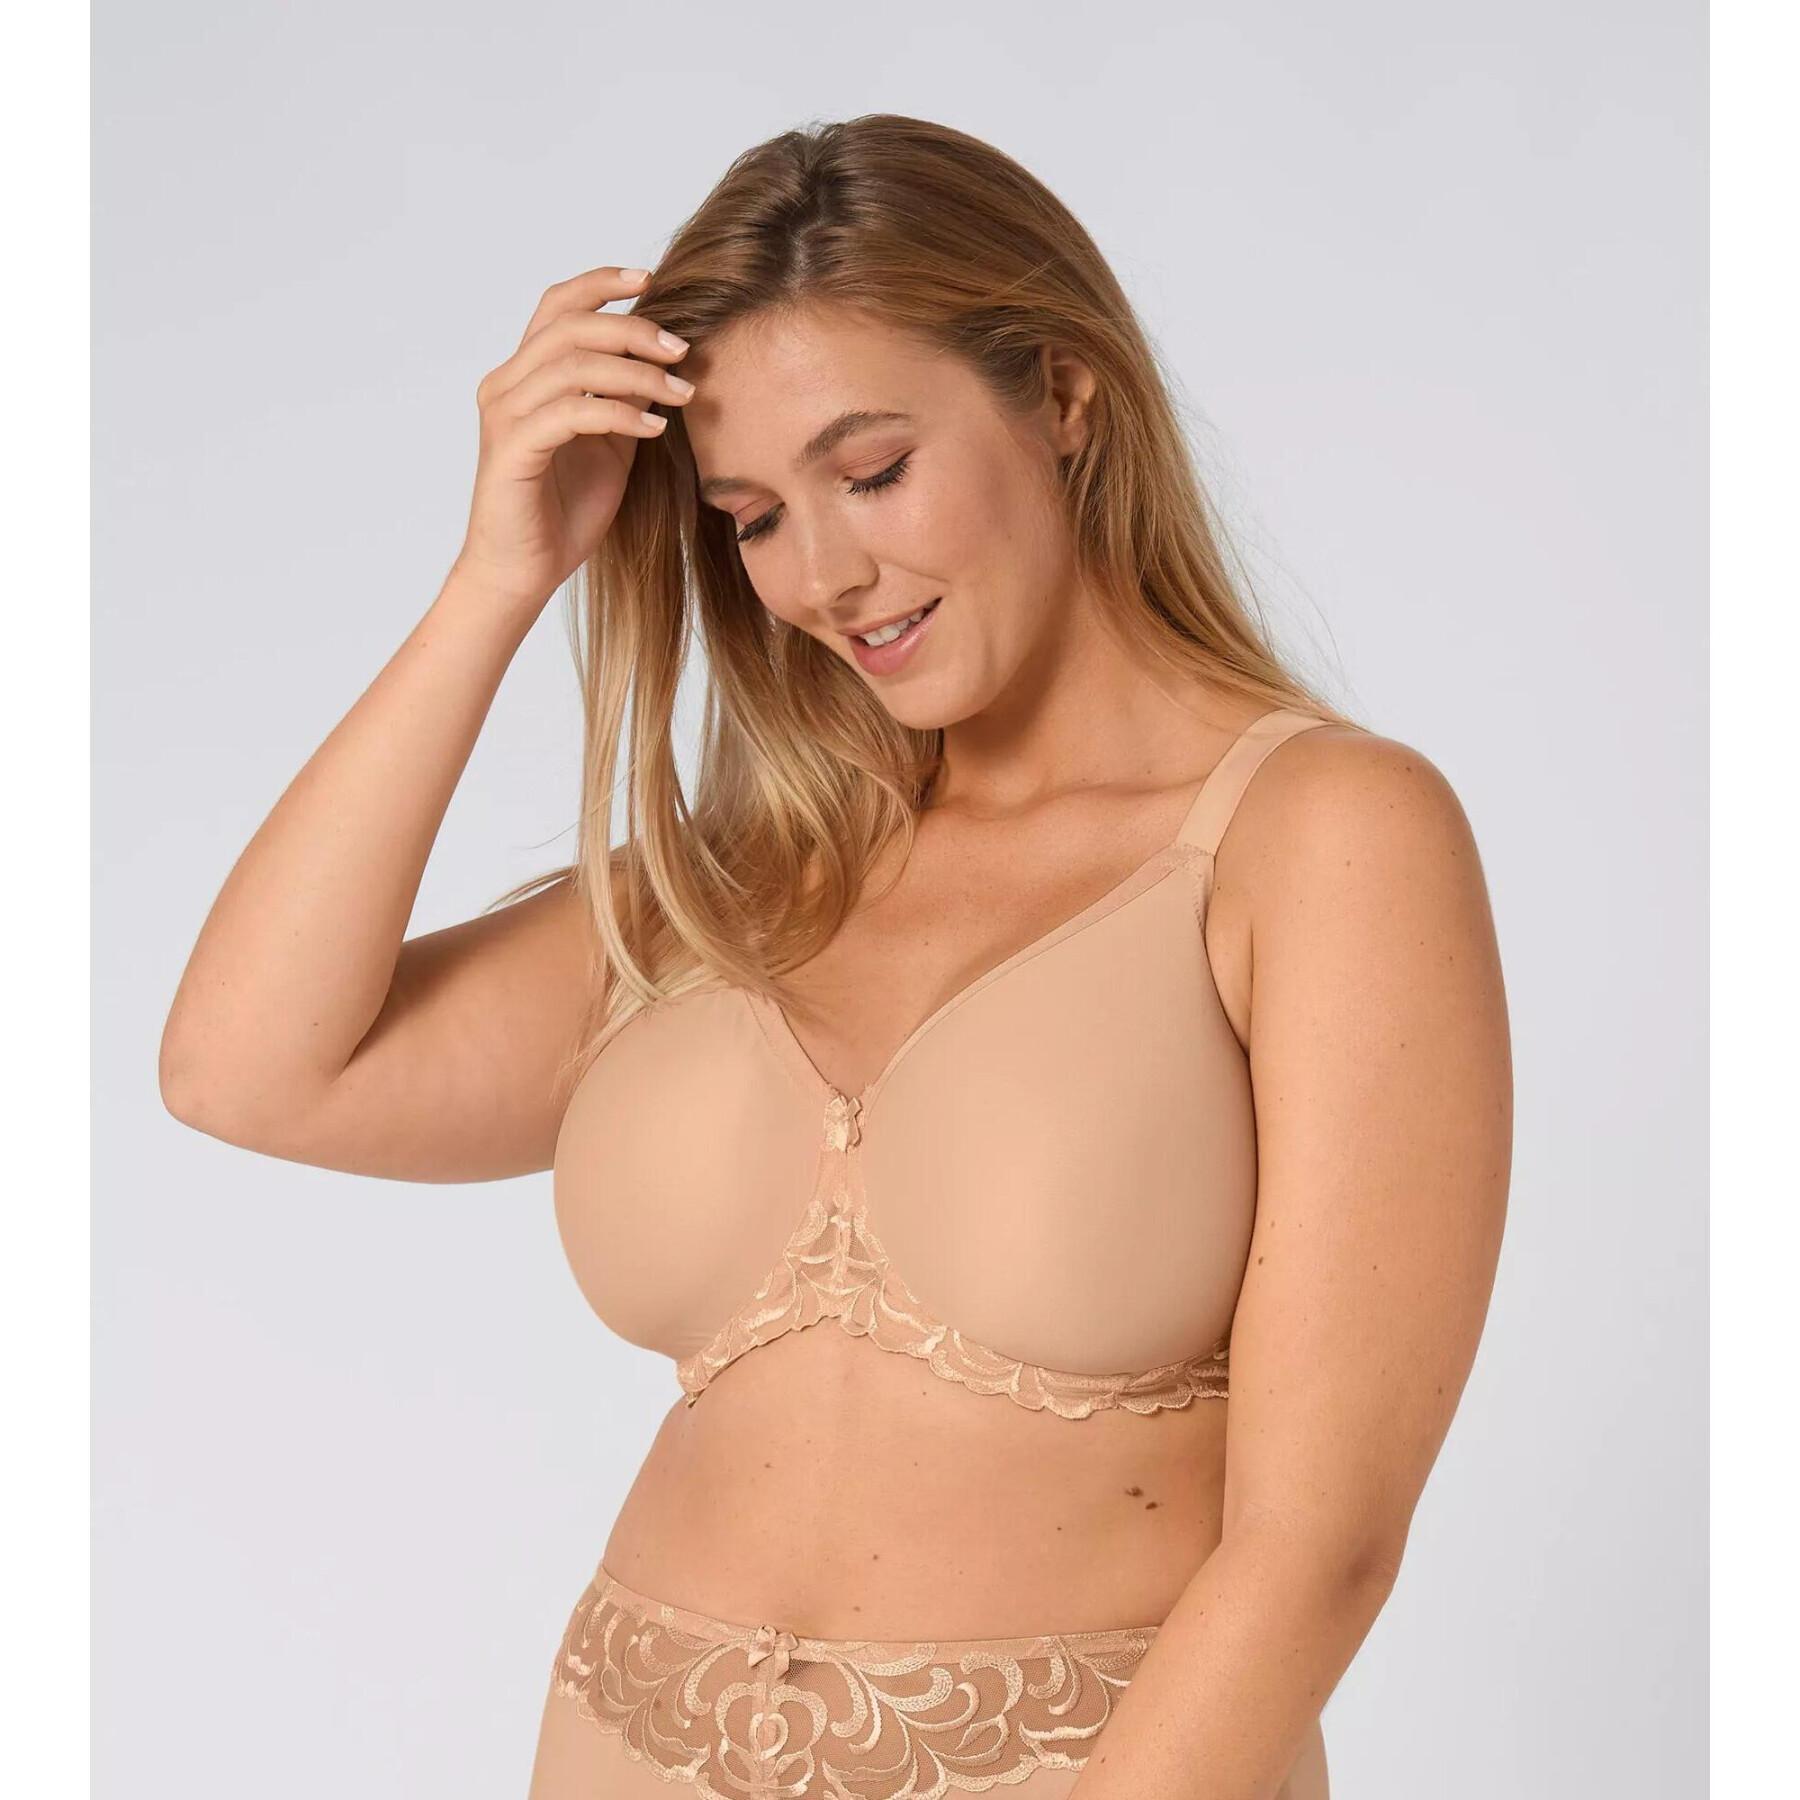 Women's bra Triumph Modern Finesse W01 - Underwears - Woman